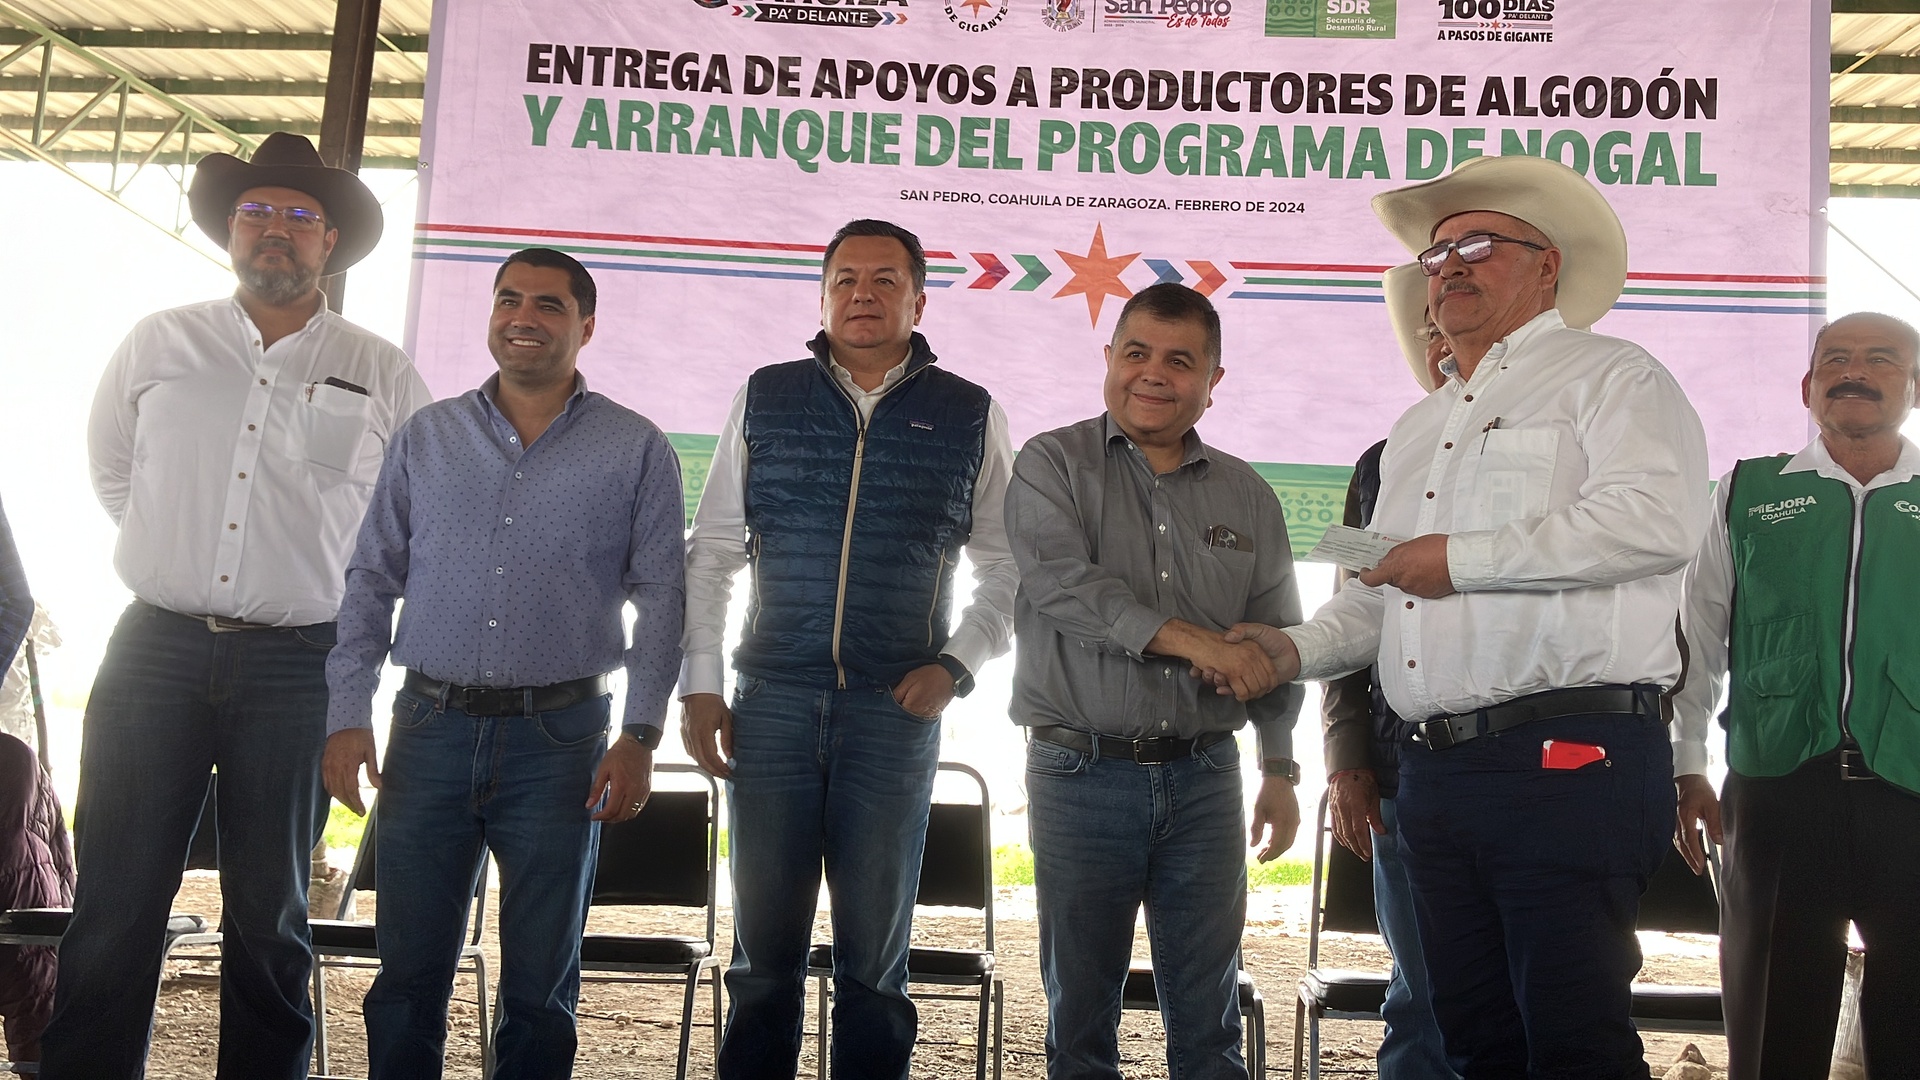 Entregan apoyos a productores de campo en el municipio de San Pedro